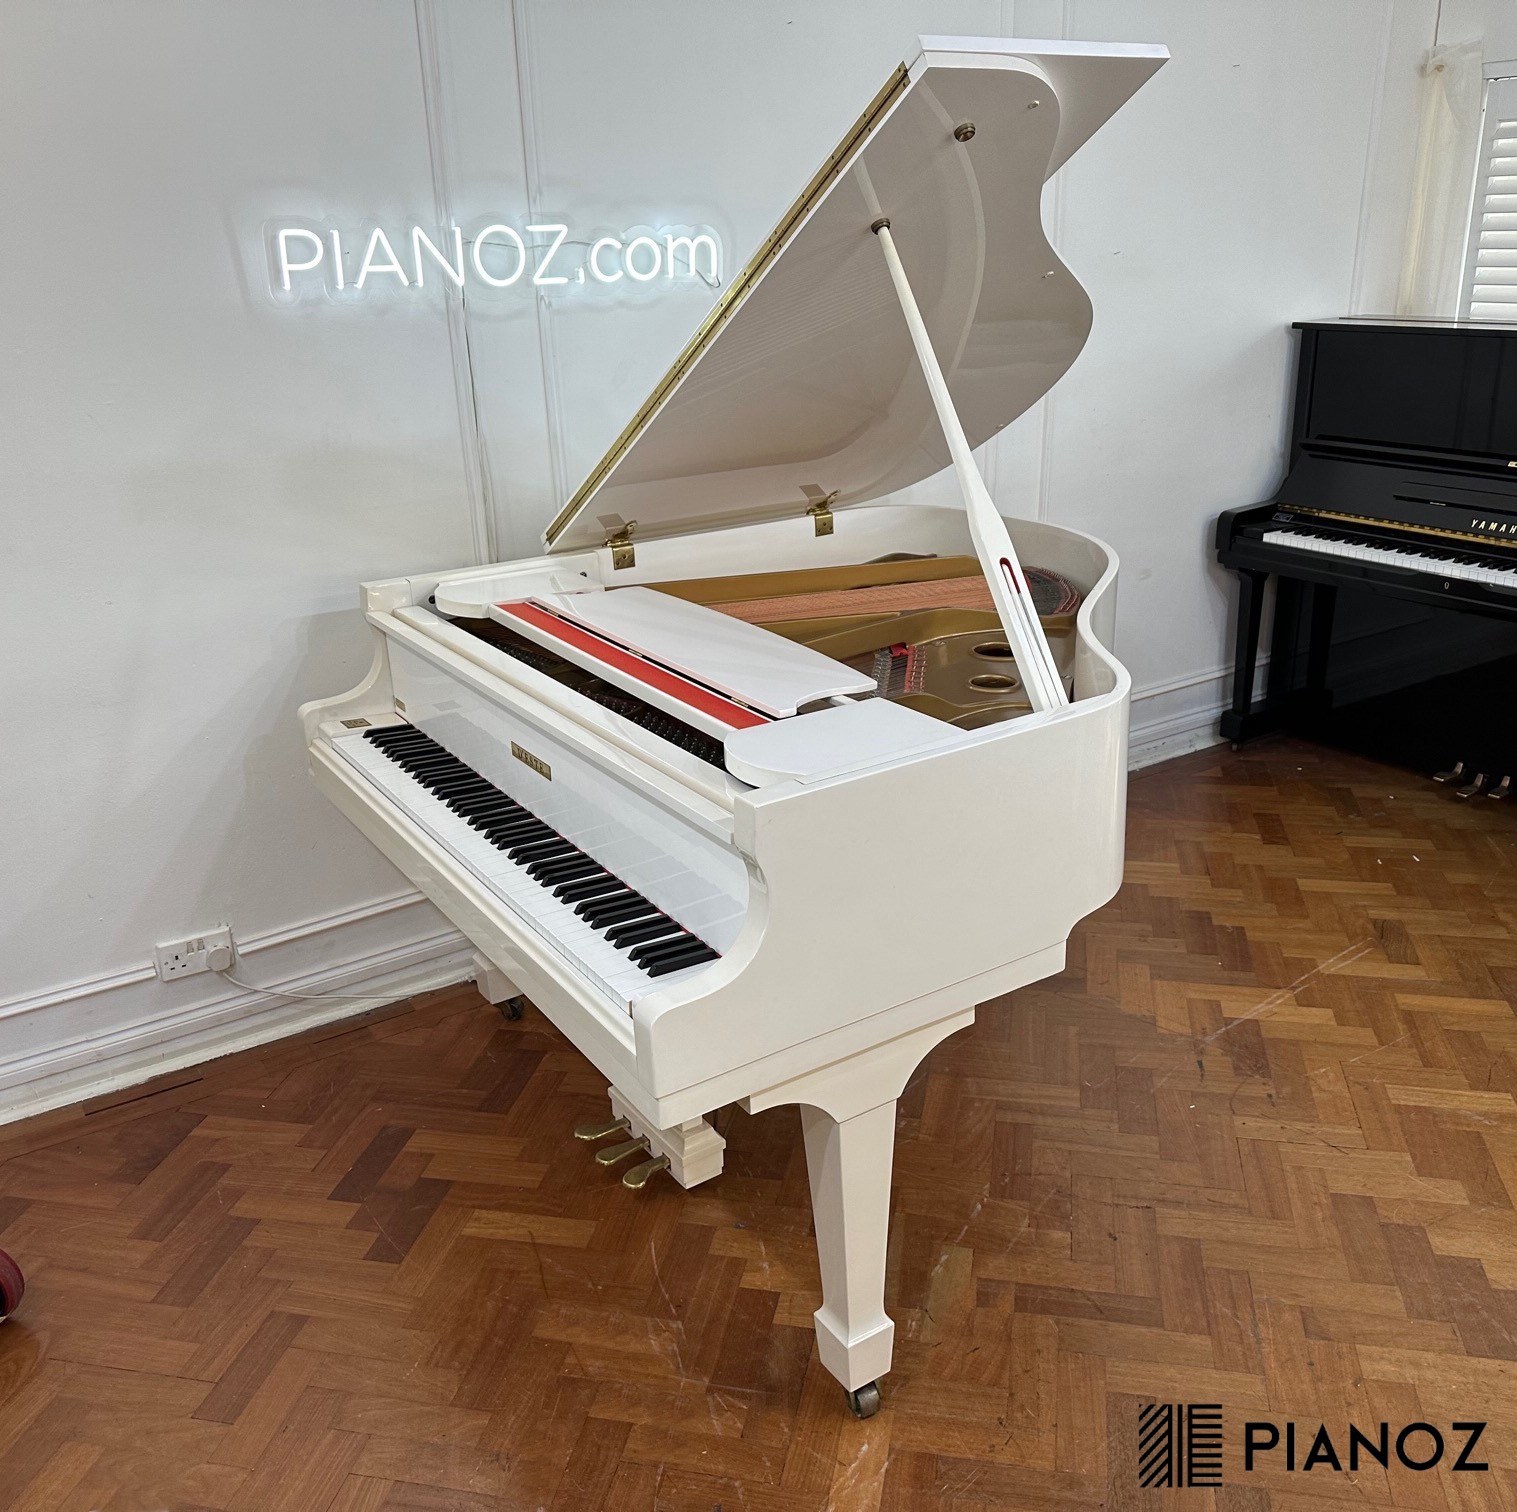 Samick D'Este White Baby Grand Piano piano for sale in UK